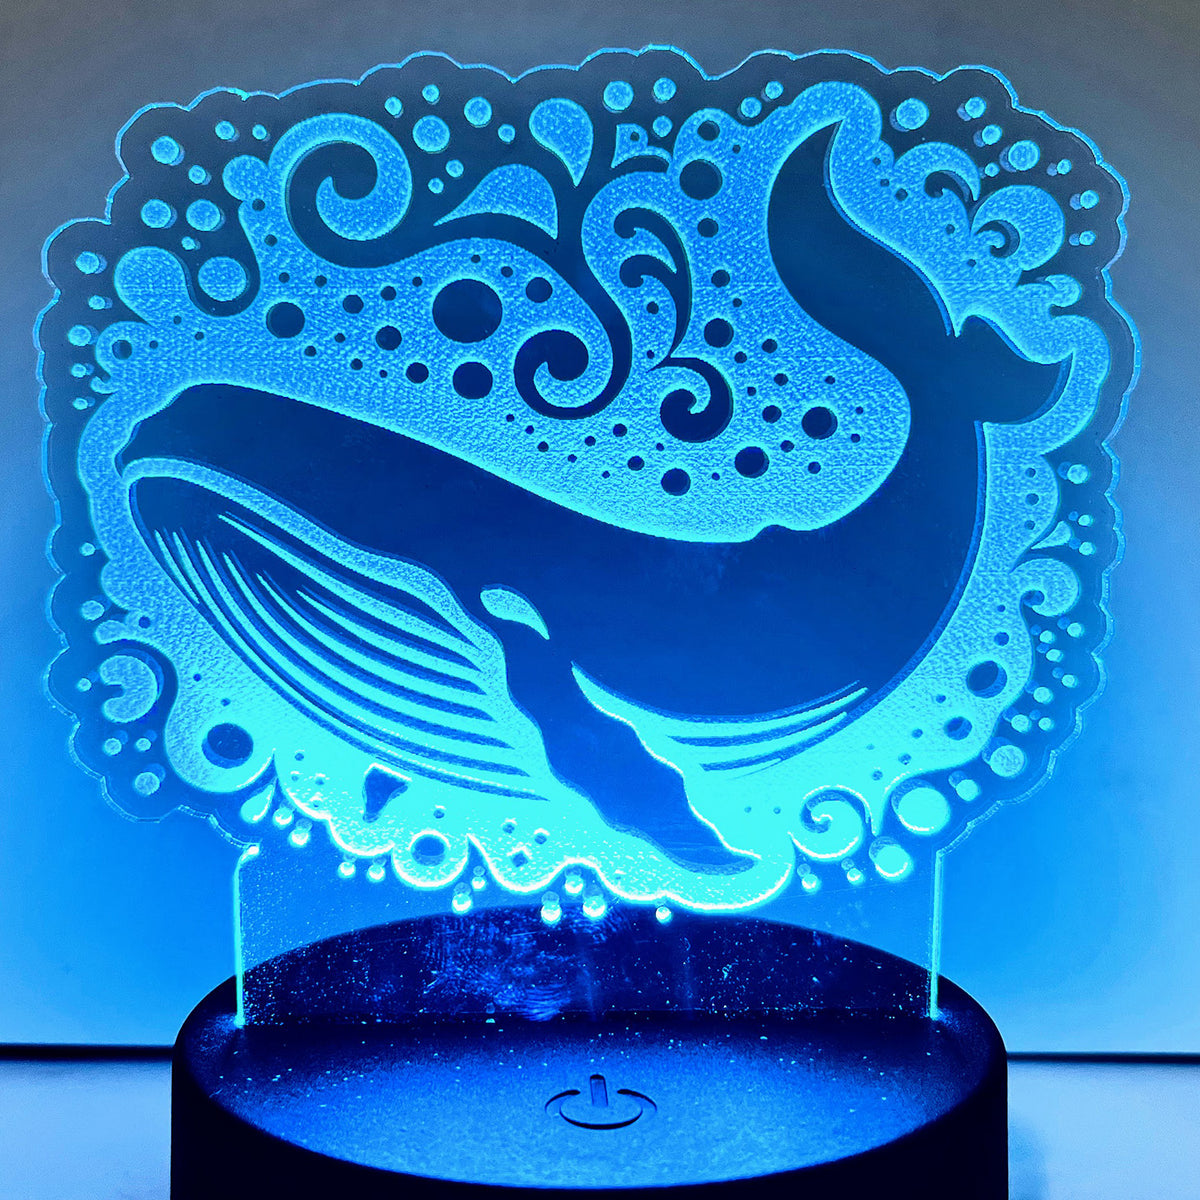 Nightlights Under the Sea - Whale LED Nightlight